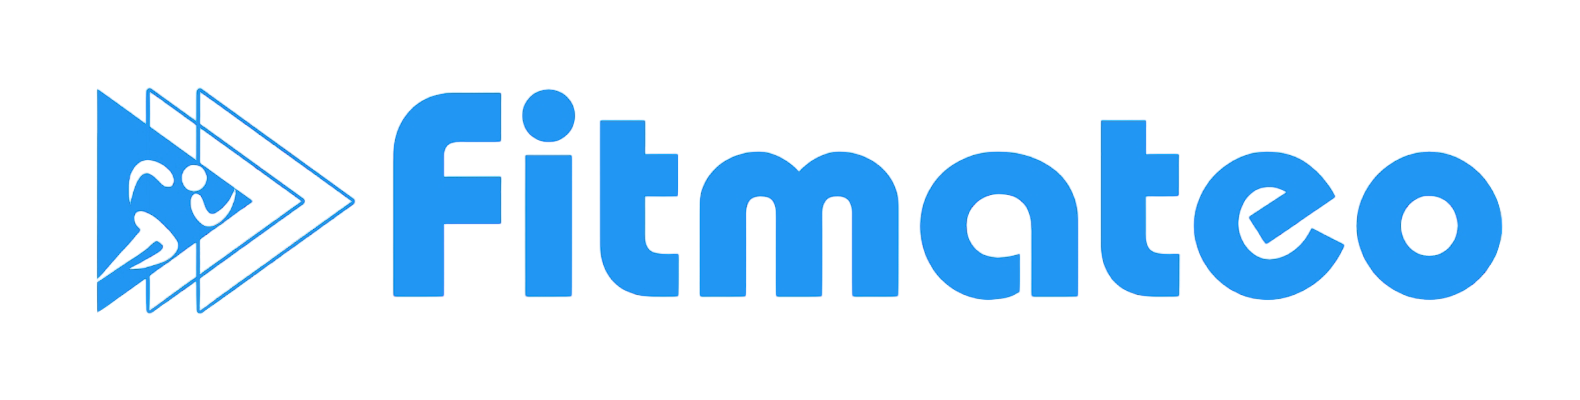 Fitmateo white logo